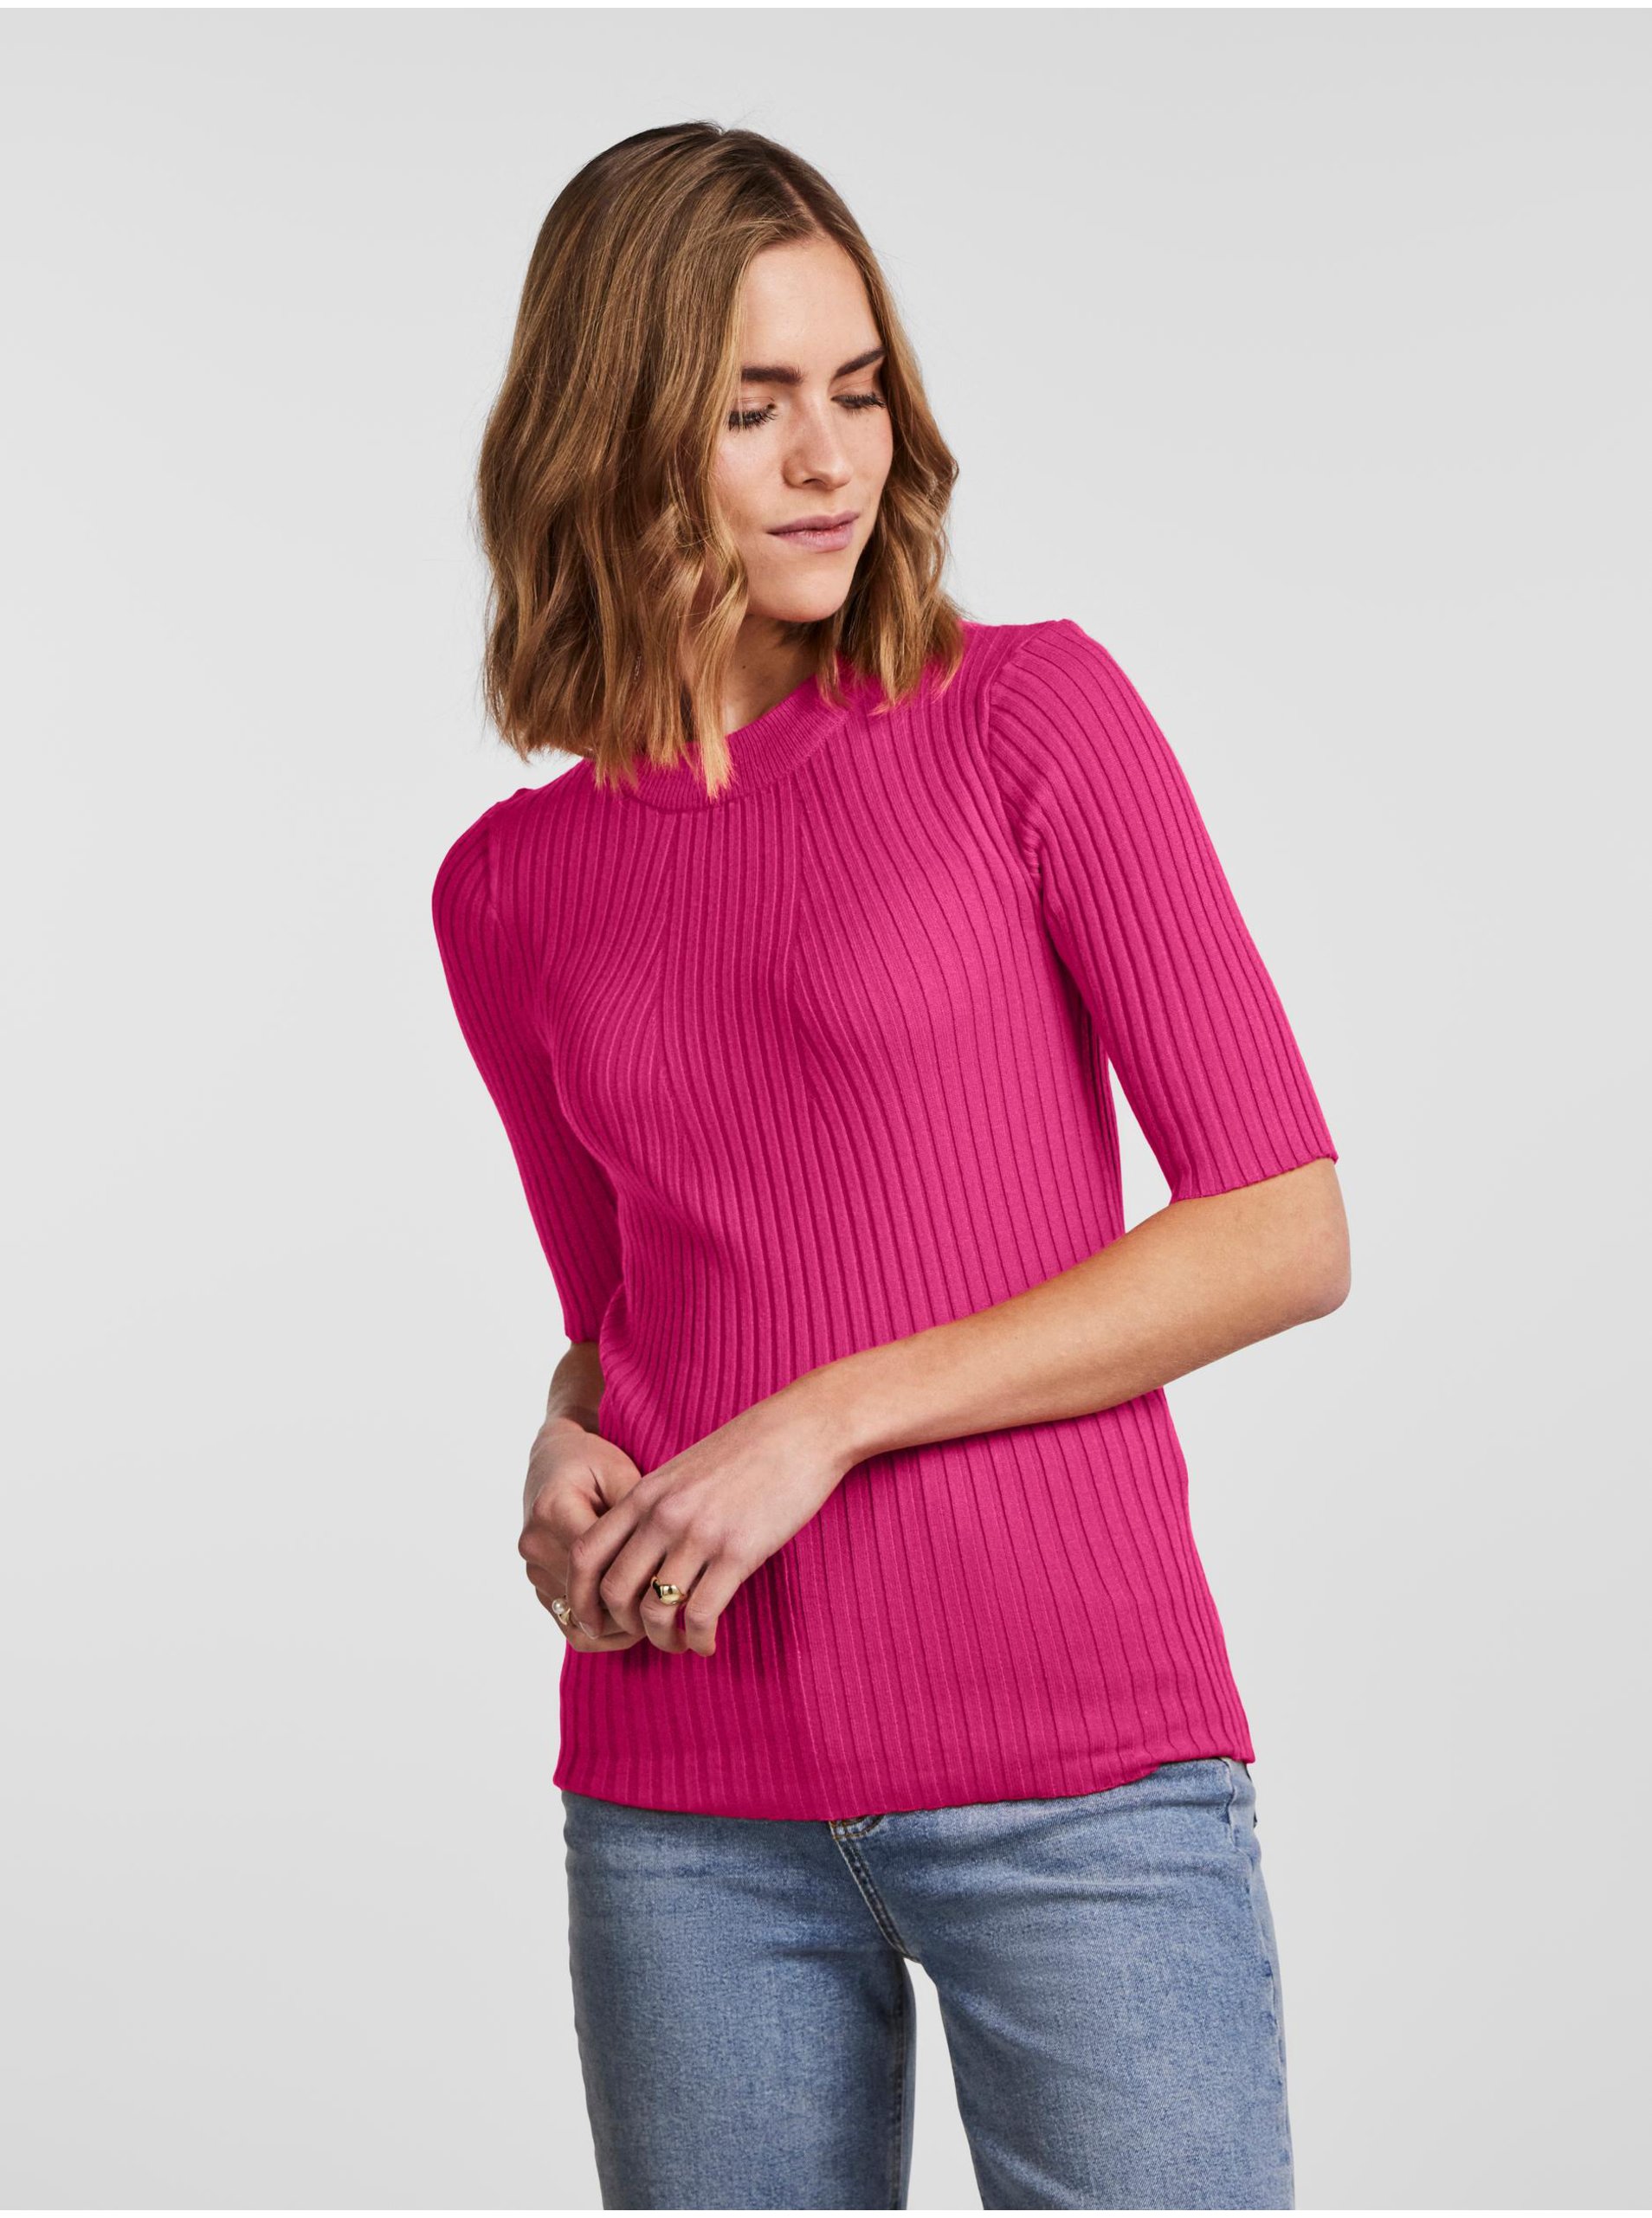 Women's Deep Pink Ribbed Light Sweater Pieces Crista - Women